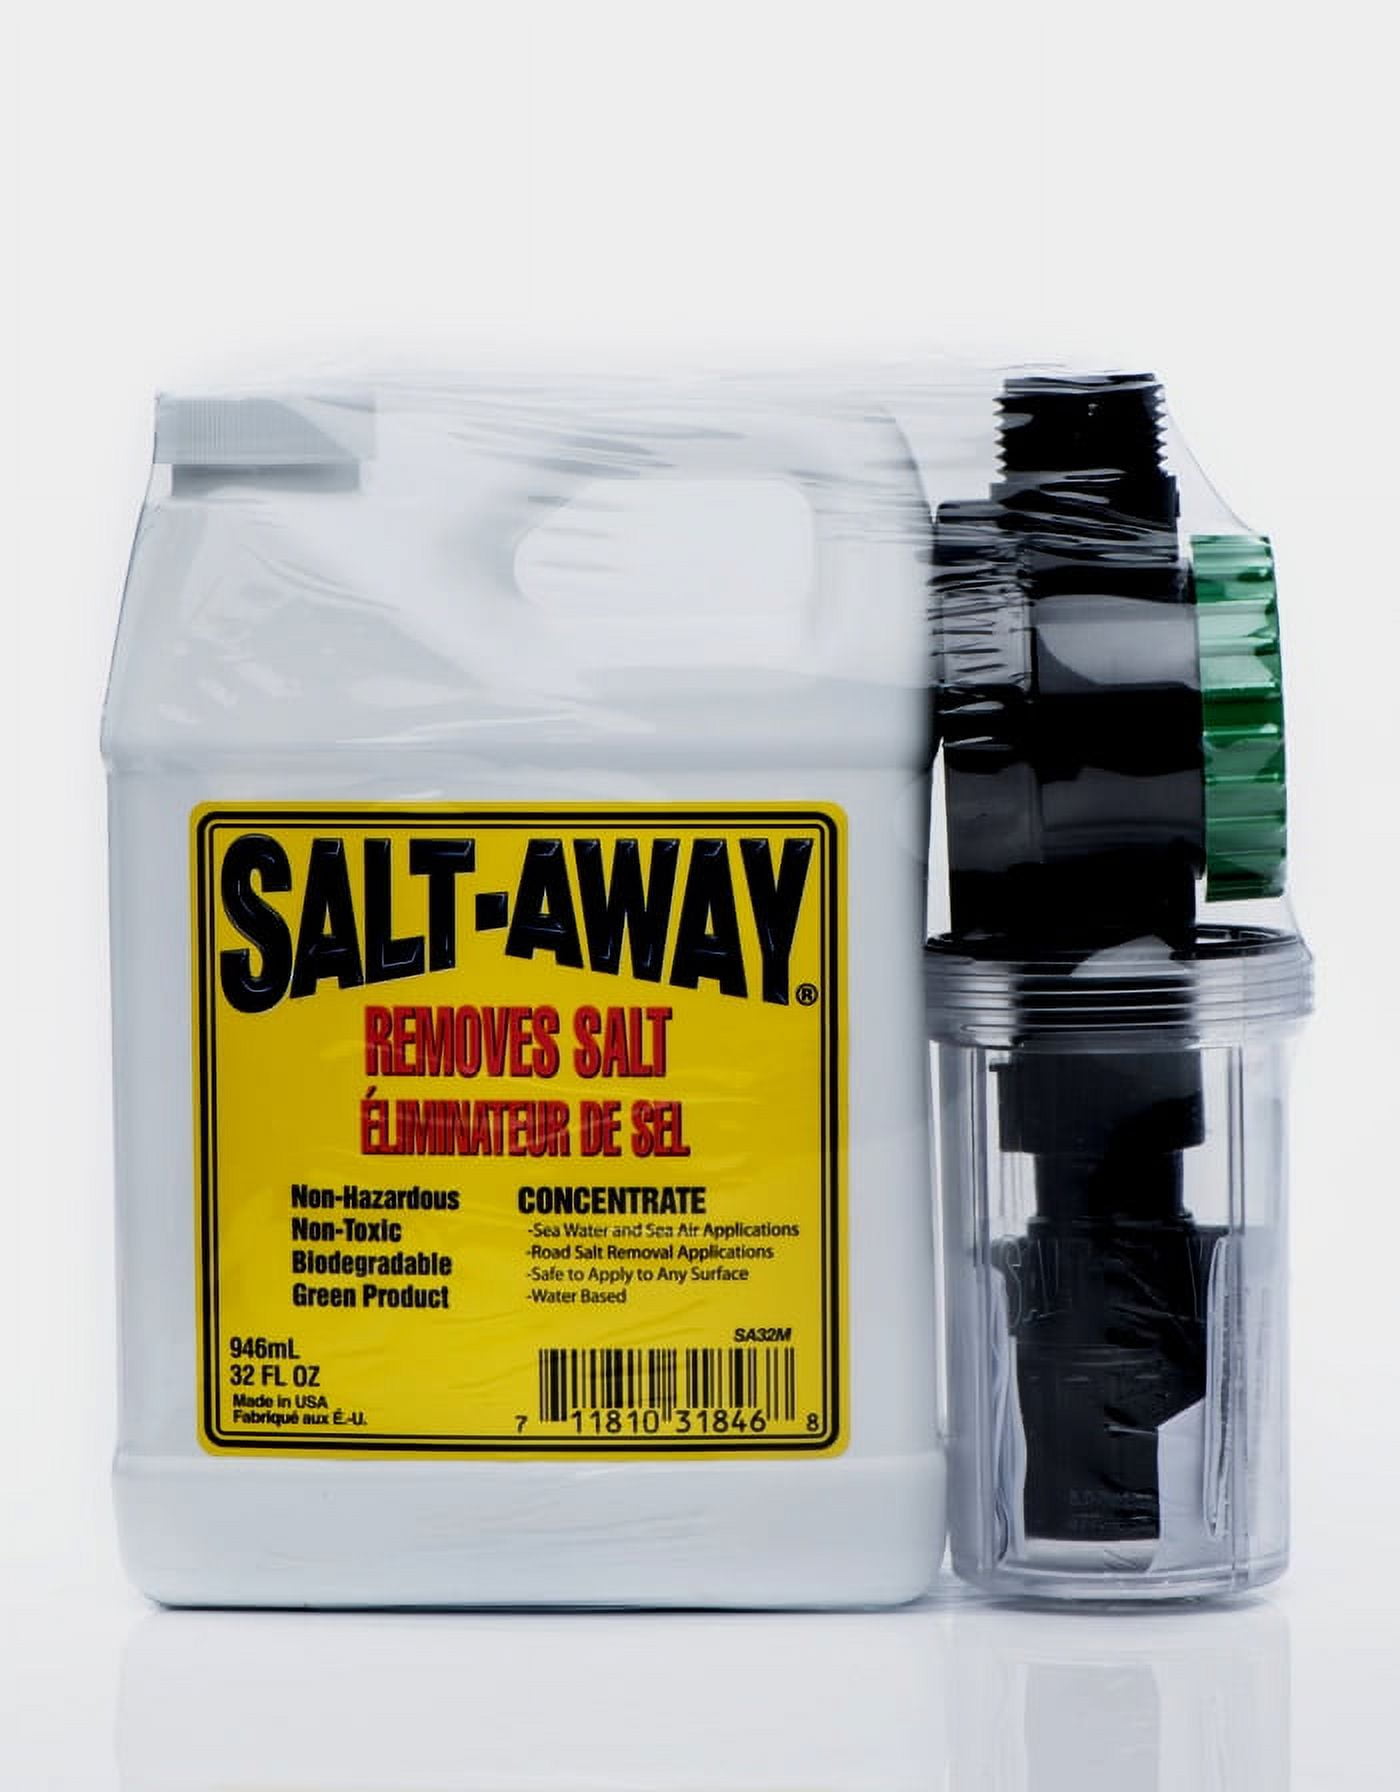 Salt Attack 1L Combo Kit 